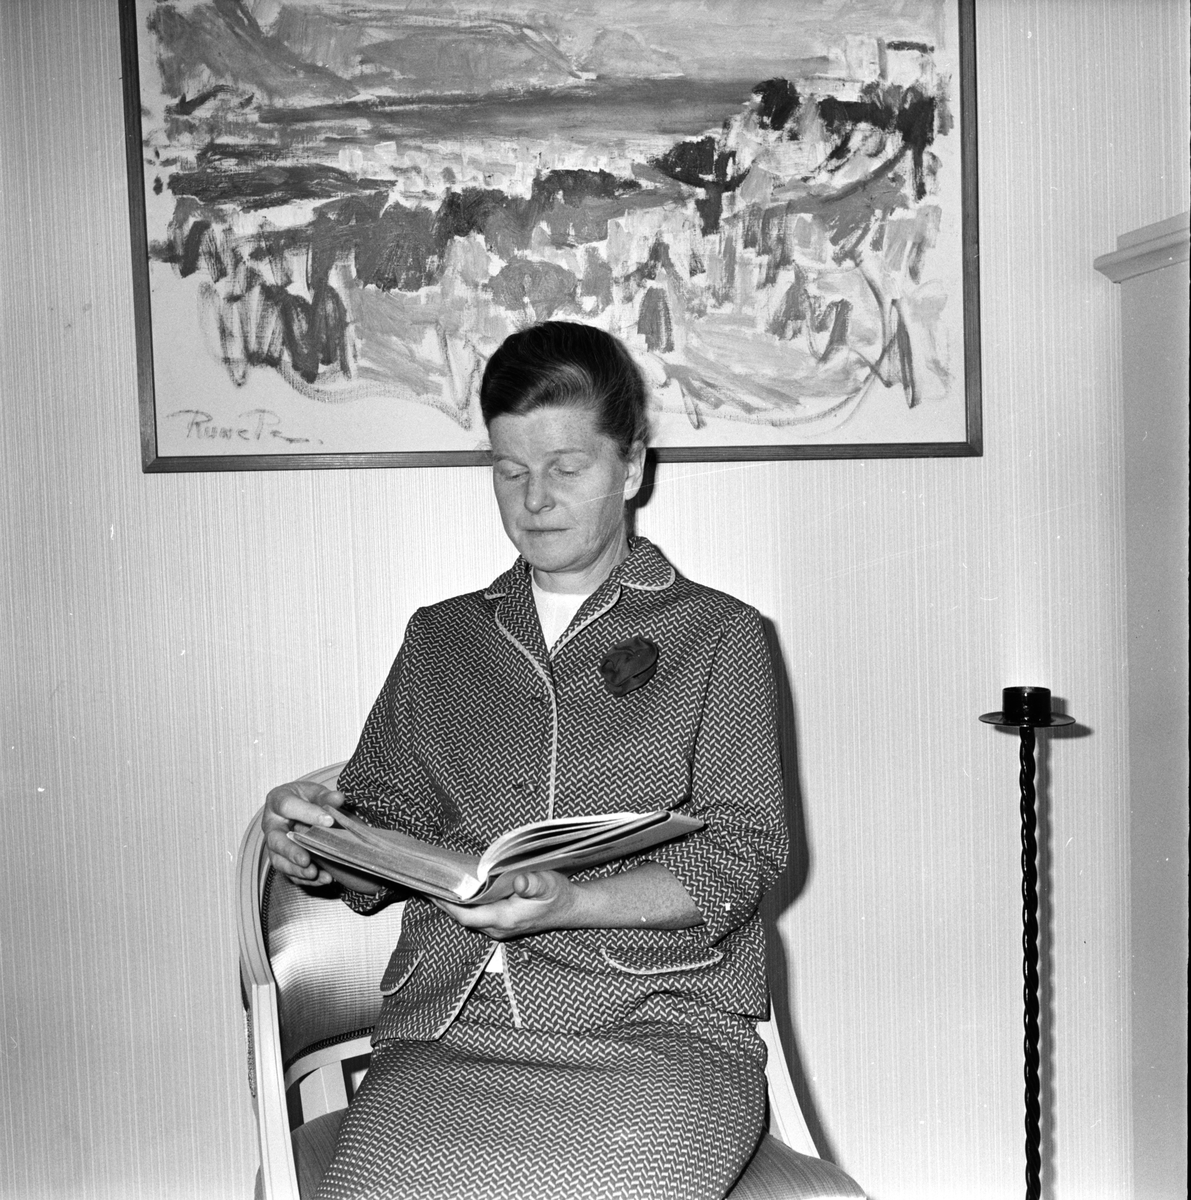 Ekh Ester, Hemvårdarinna,
Bollnäs,
19 September 1966